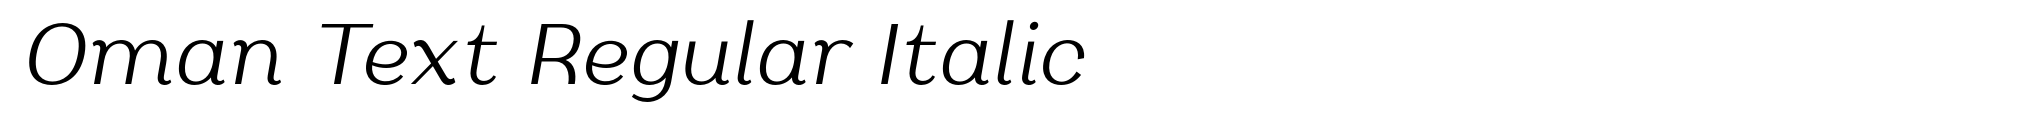 Oman Text Regular Italic image